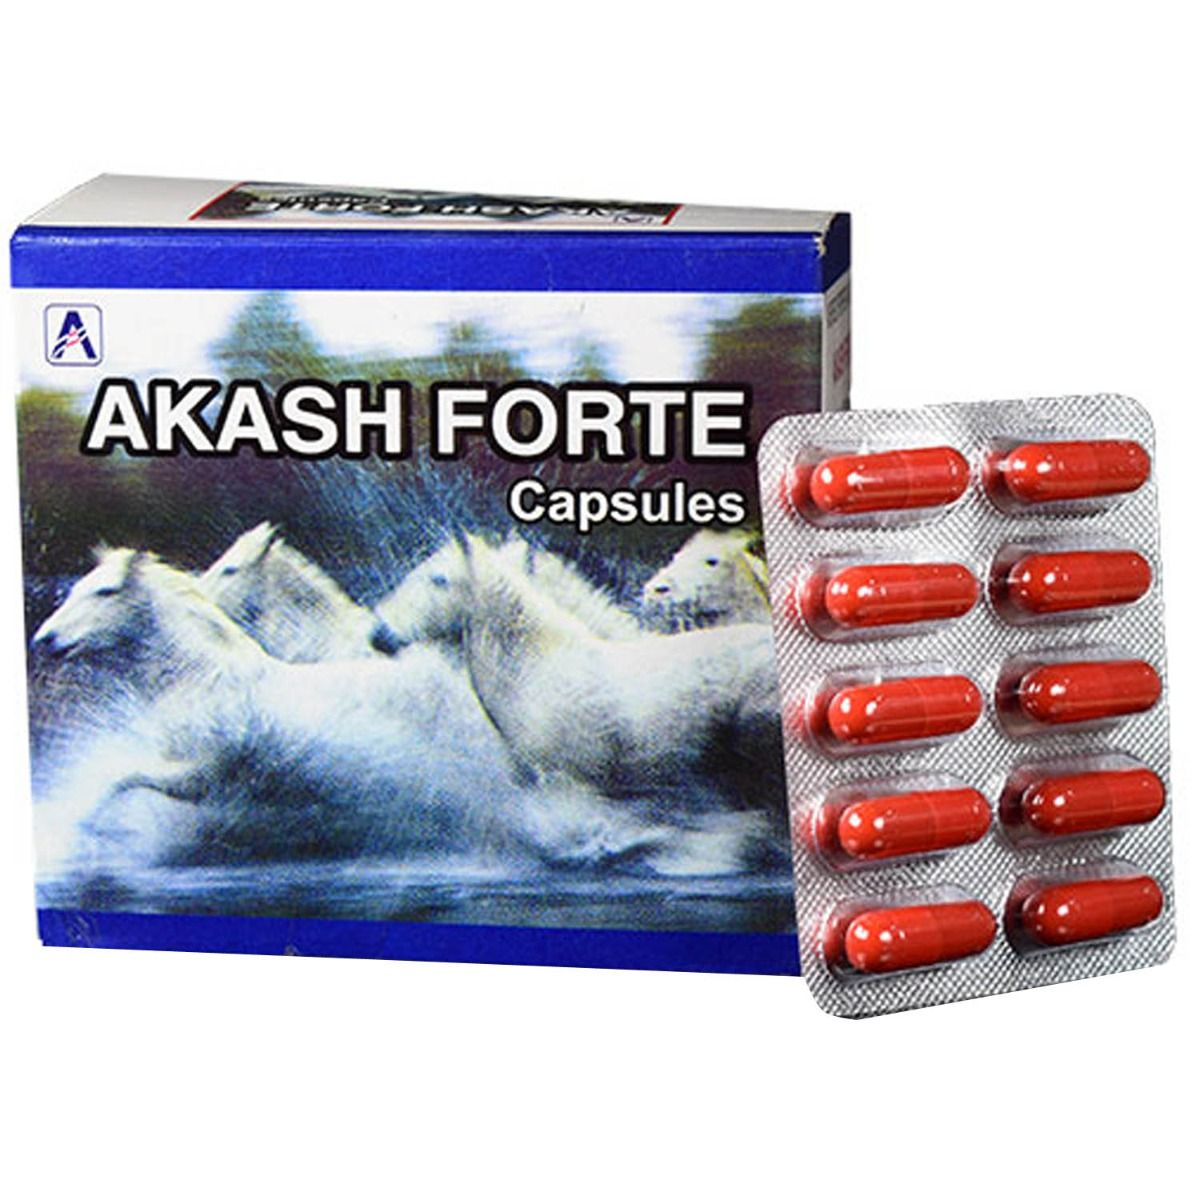 Buy Akash Forte, 10 Capsules Online